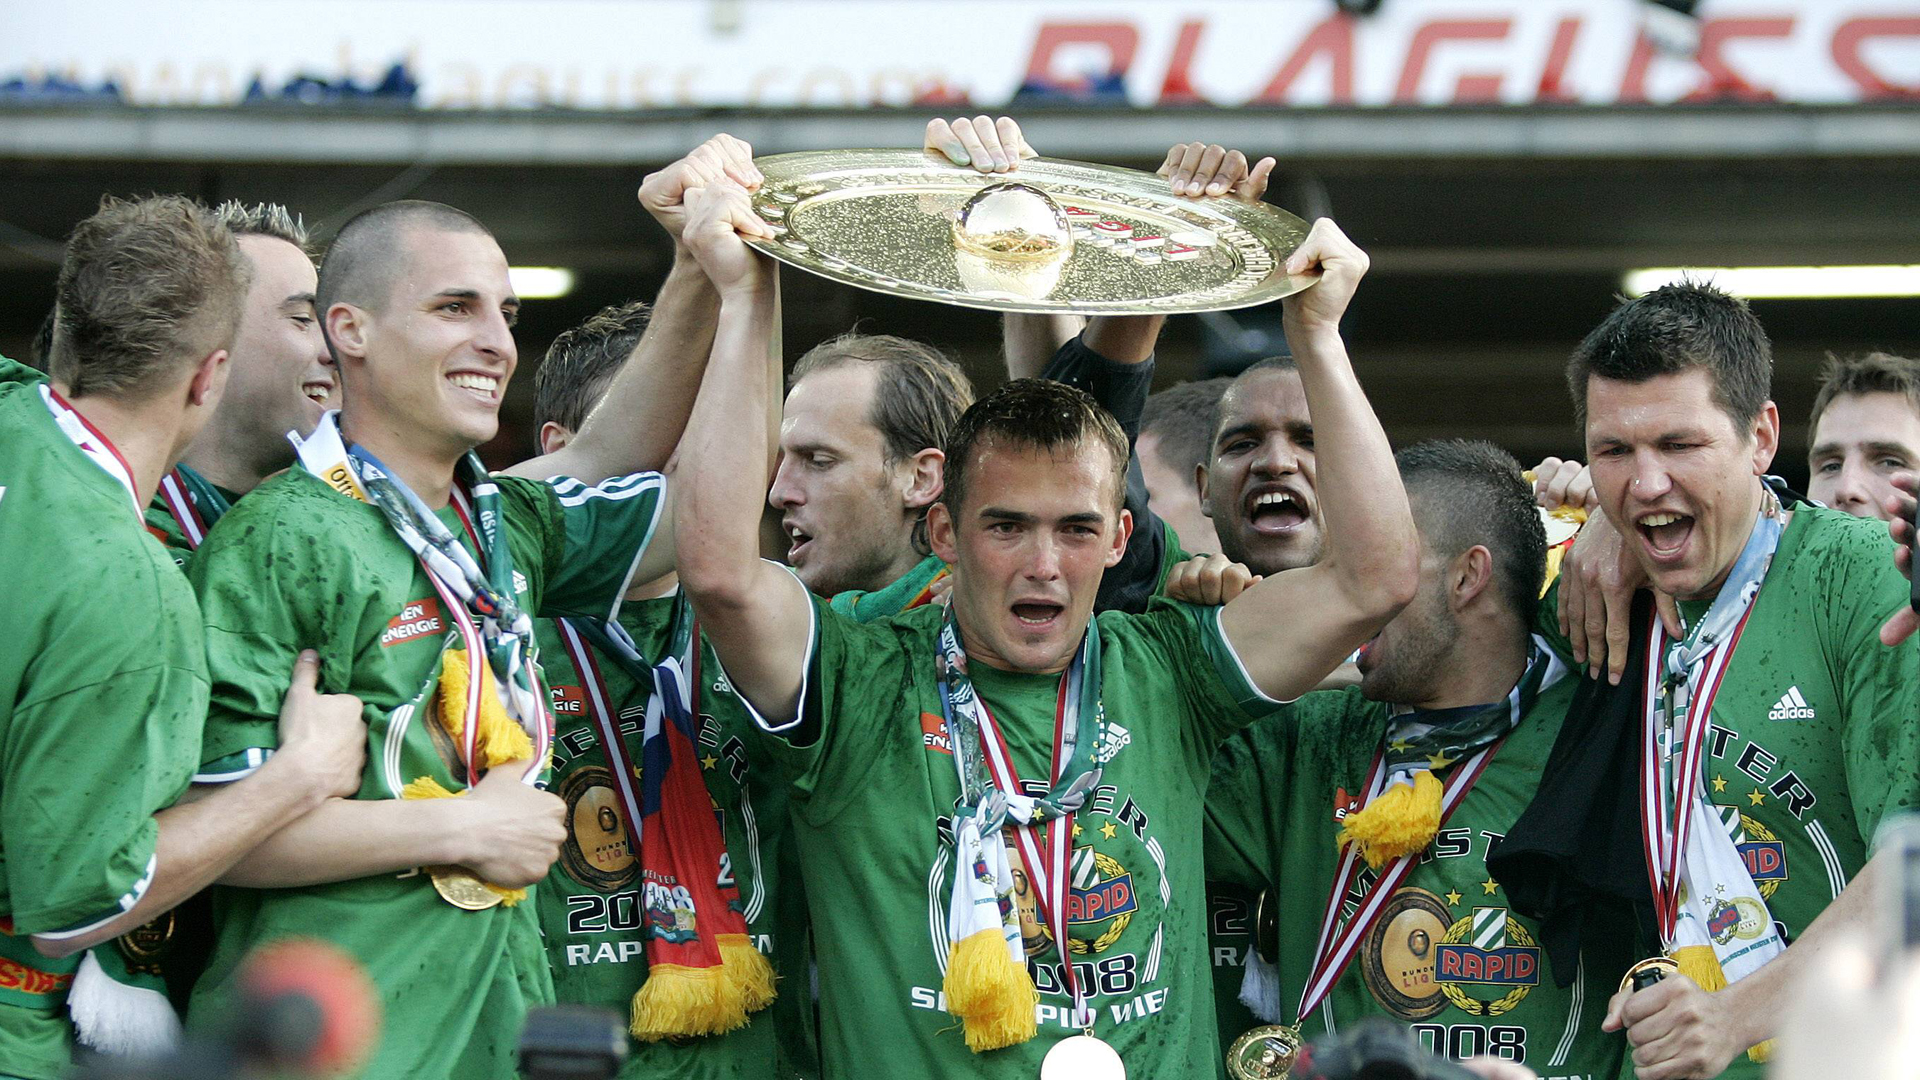 Spieler von Rapid Wien bejubeln Meistertitel 2008 mit hochgereckter Meisterschale